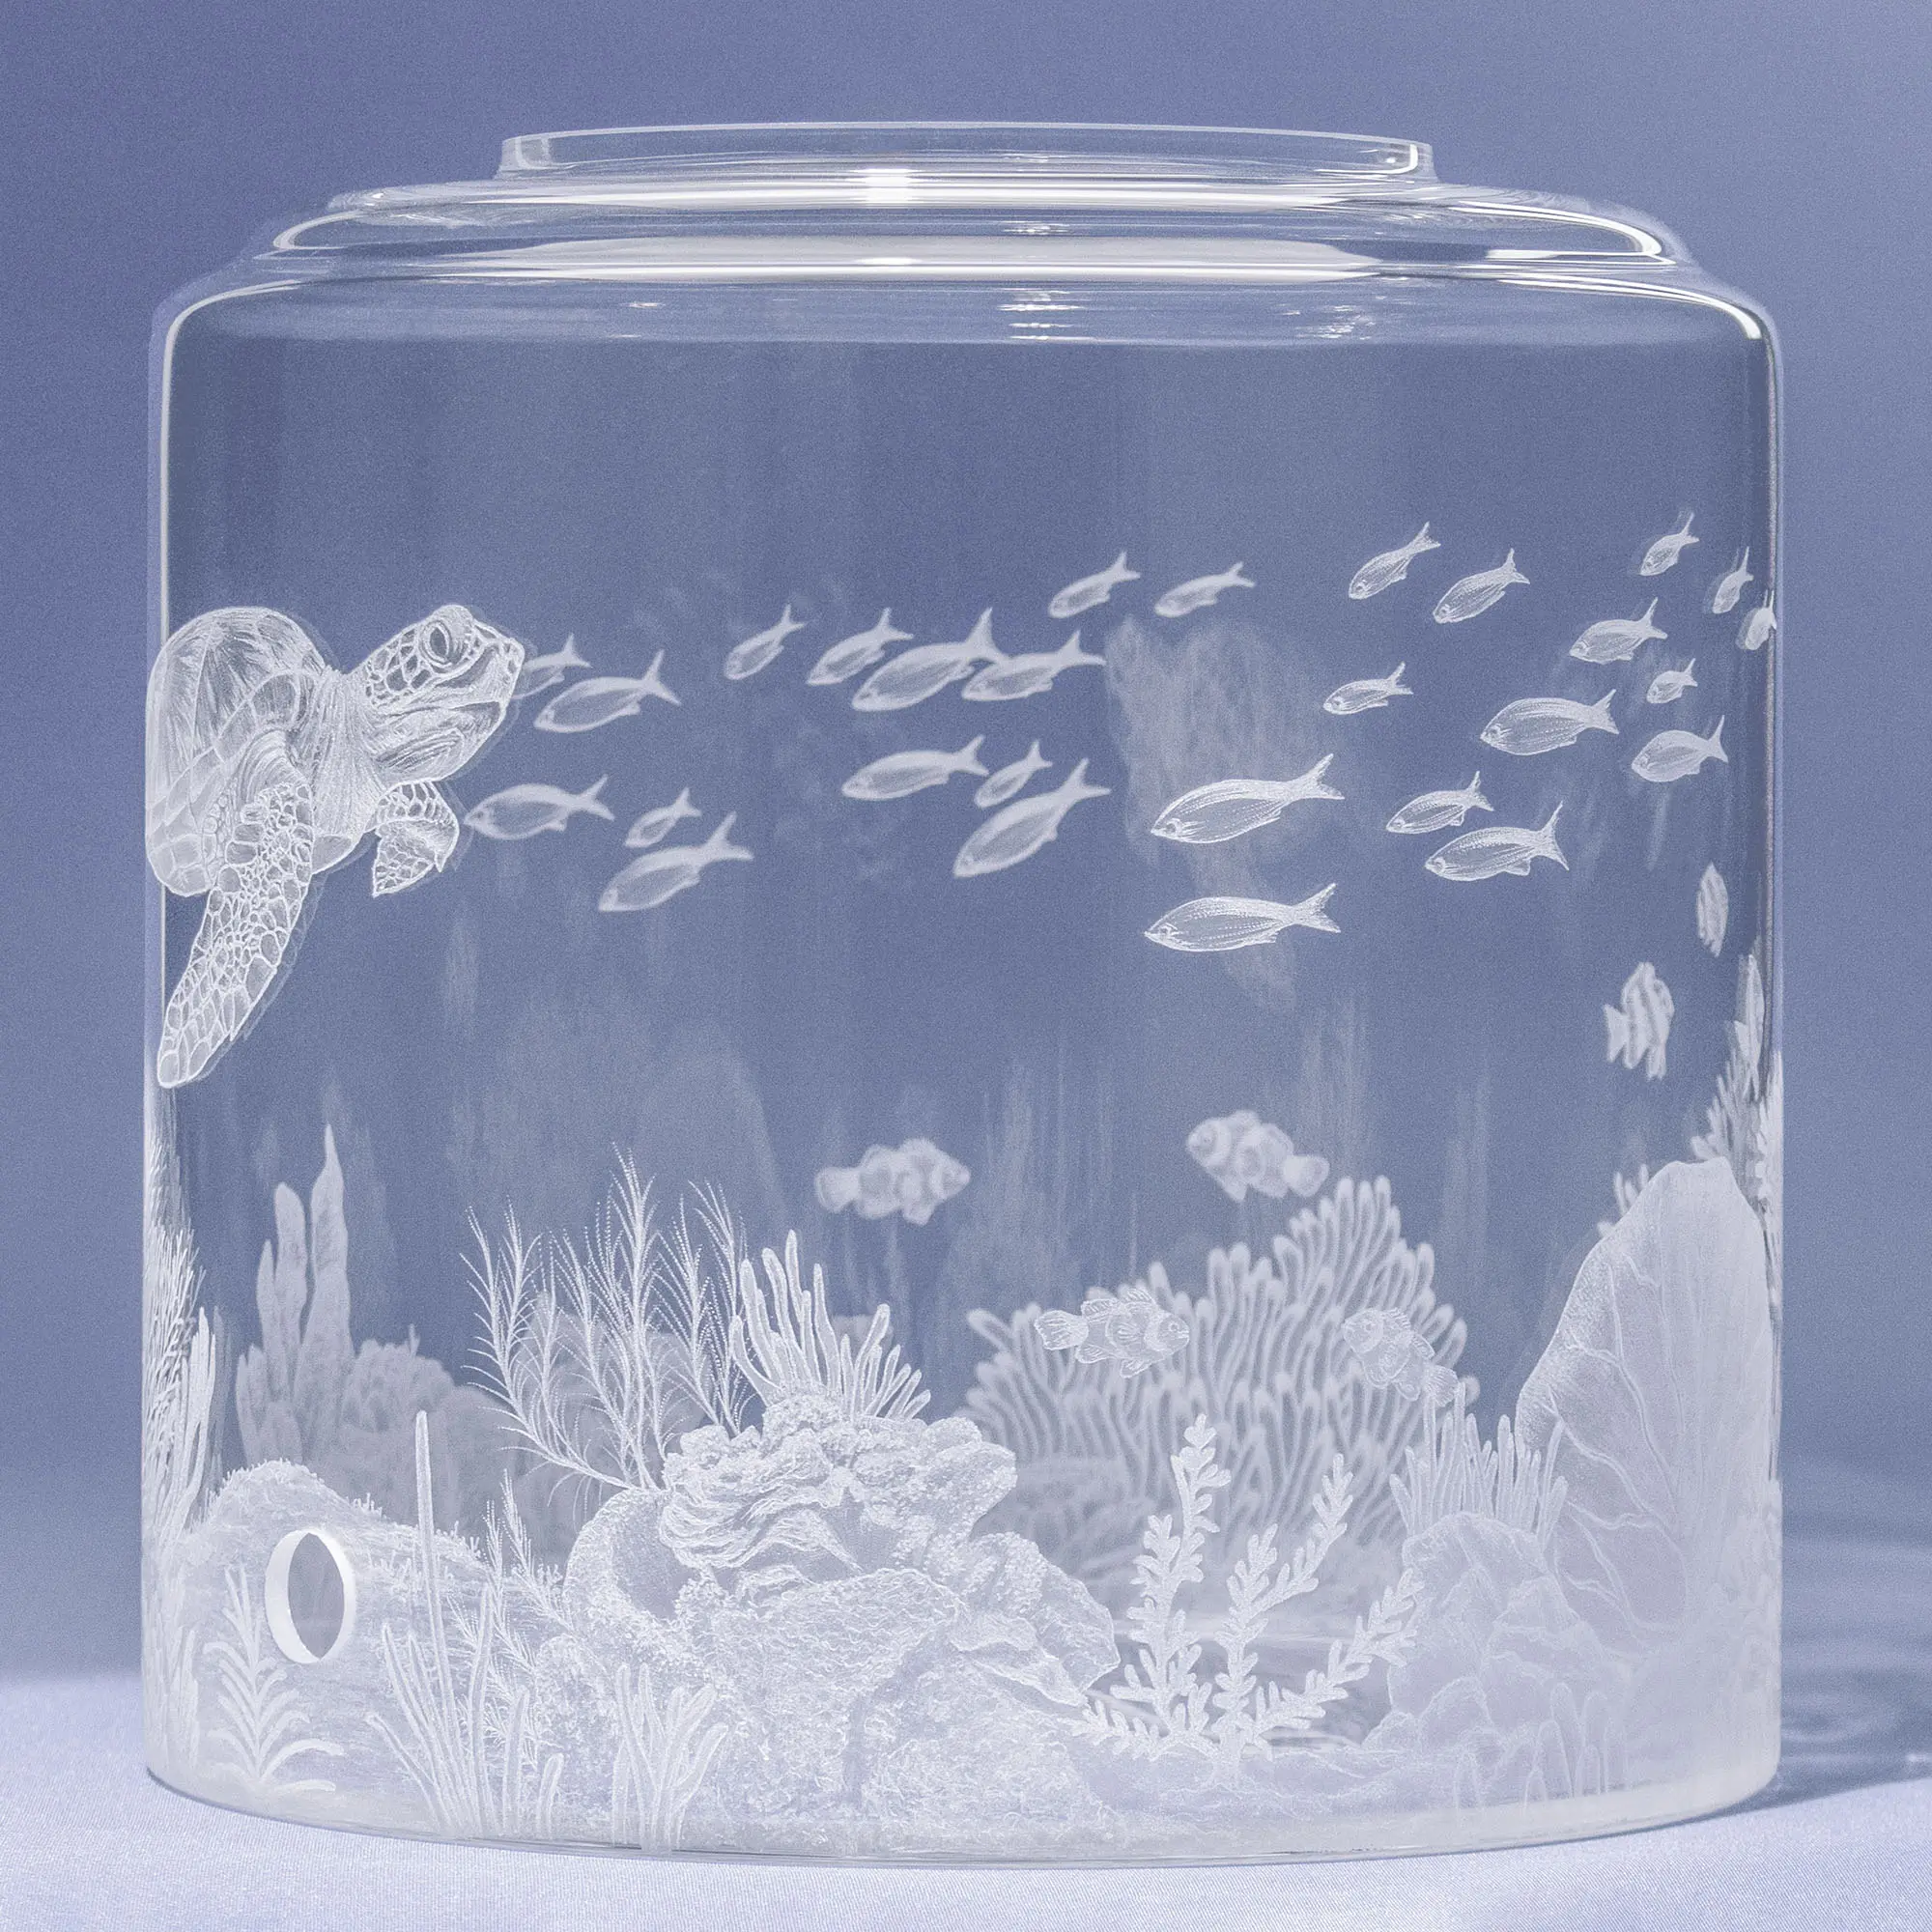 Auf dem Bild ist ein Wassertank für Acala Wasserfilter mit einer Handgravur die ein Riff mit Fischen,Korallen und einer schönen Schildkröte dargestellt wird,die linke Seite